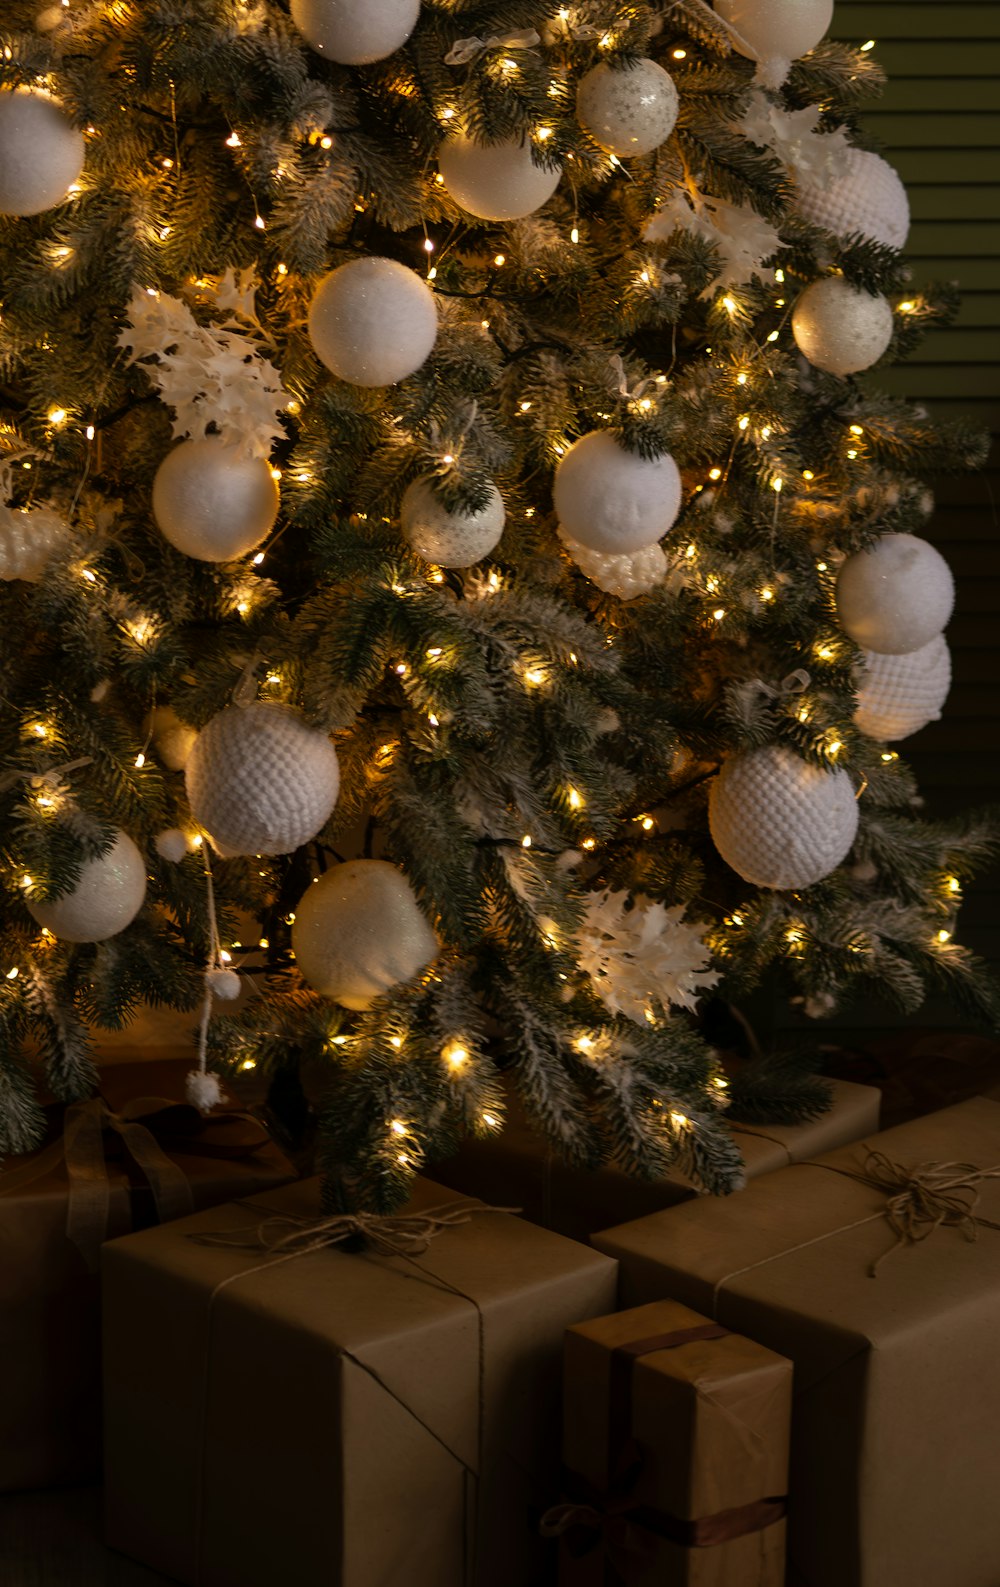 Un árbol de Navidad decorado con regalos debajo de él